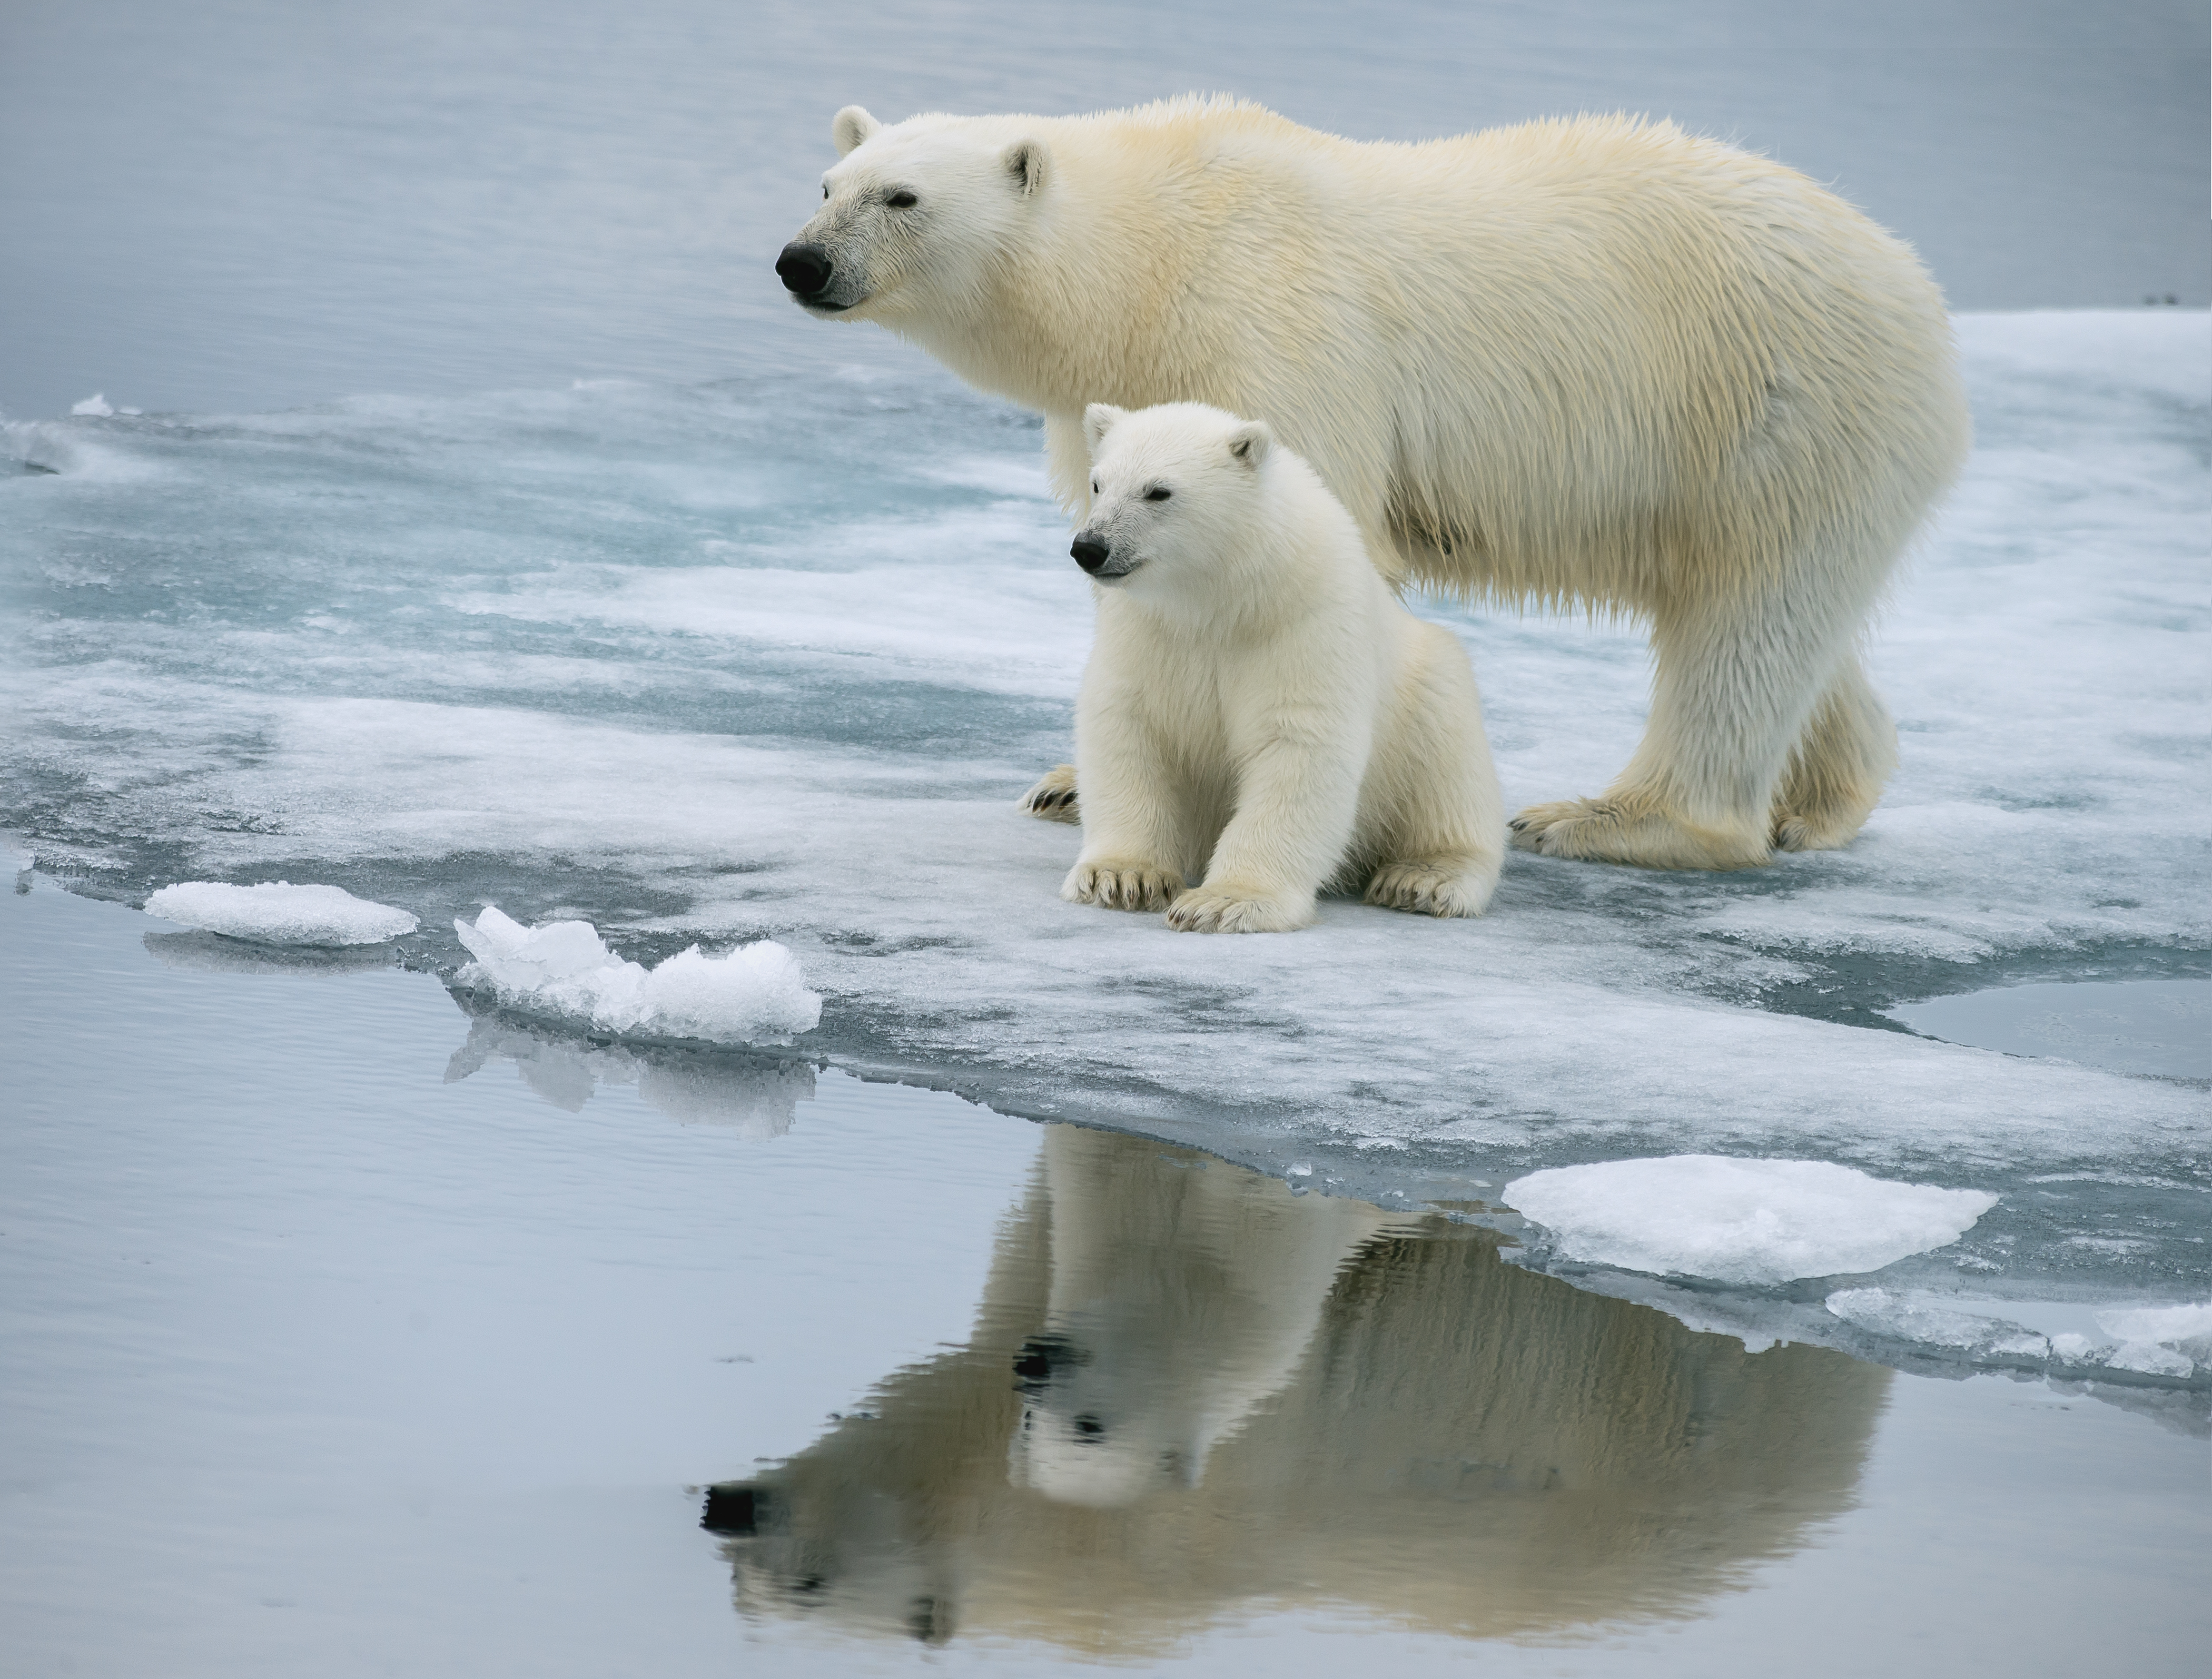 Поздравления с днем белым медведем. Белый медведь (Лаптевская популяция). Белый медведь (Карско-Баренцевоморская популяция). Белый медведь в Северной Америке. Северный Ледовитый океан белый медведь.